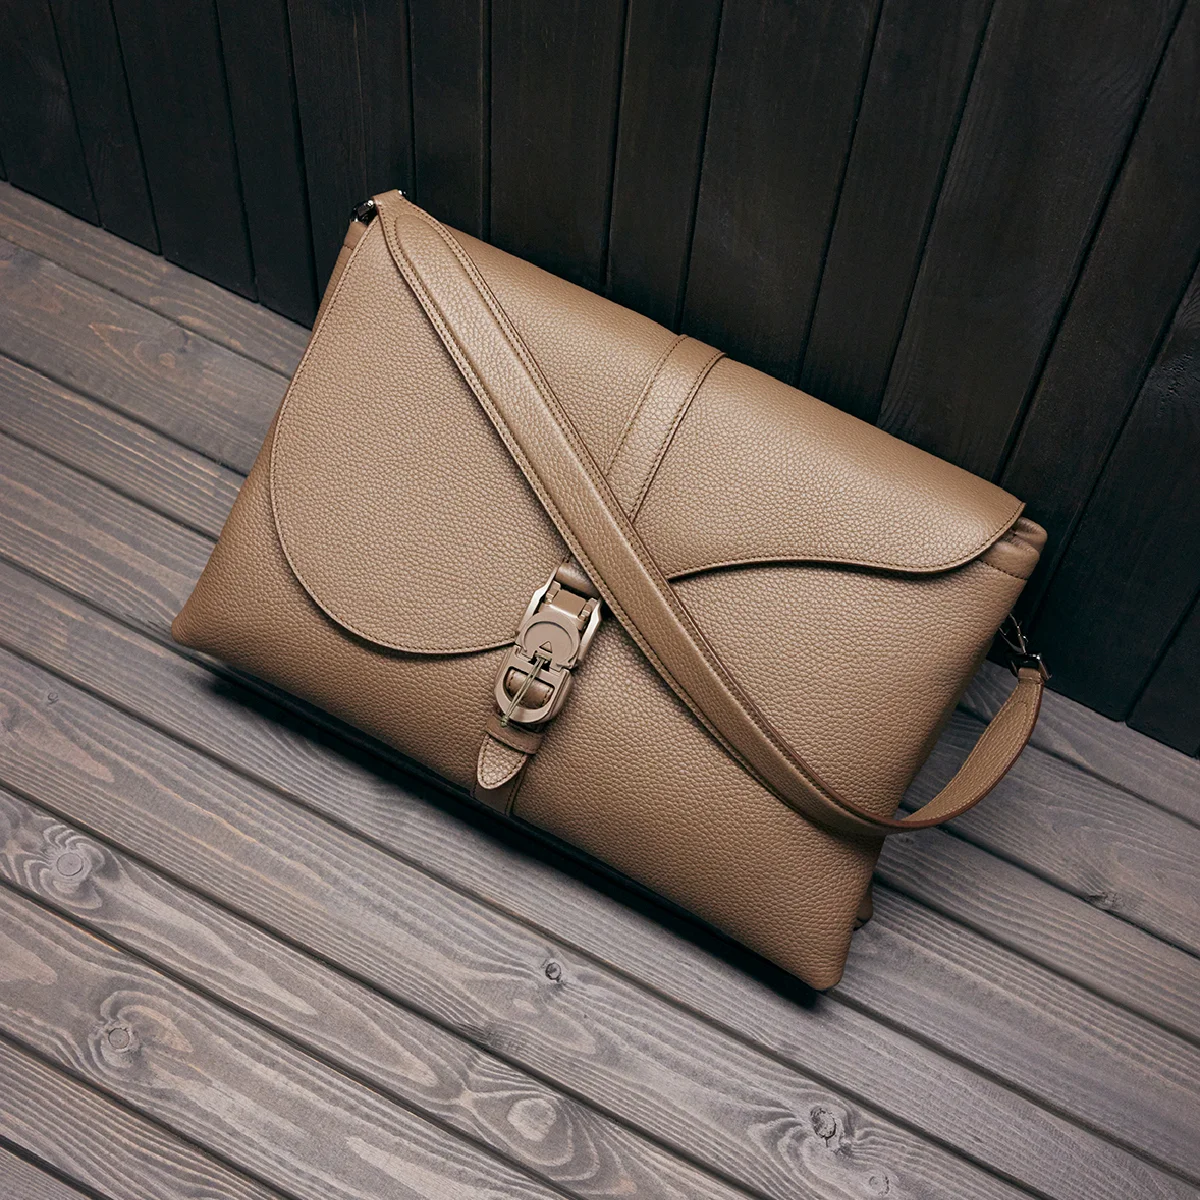 快適さと美しさの共存【ディオール】 から新作バッグ「ディオール ピロー」が発売